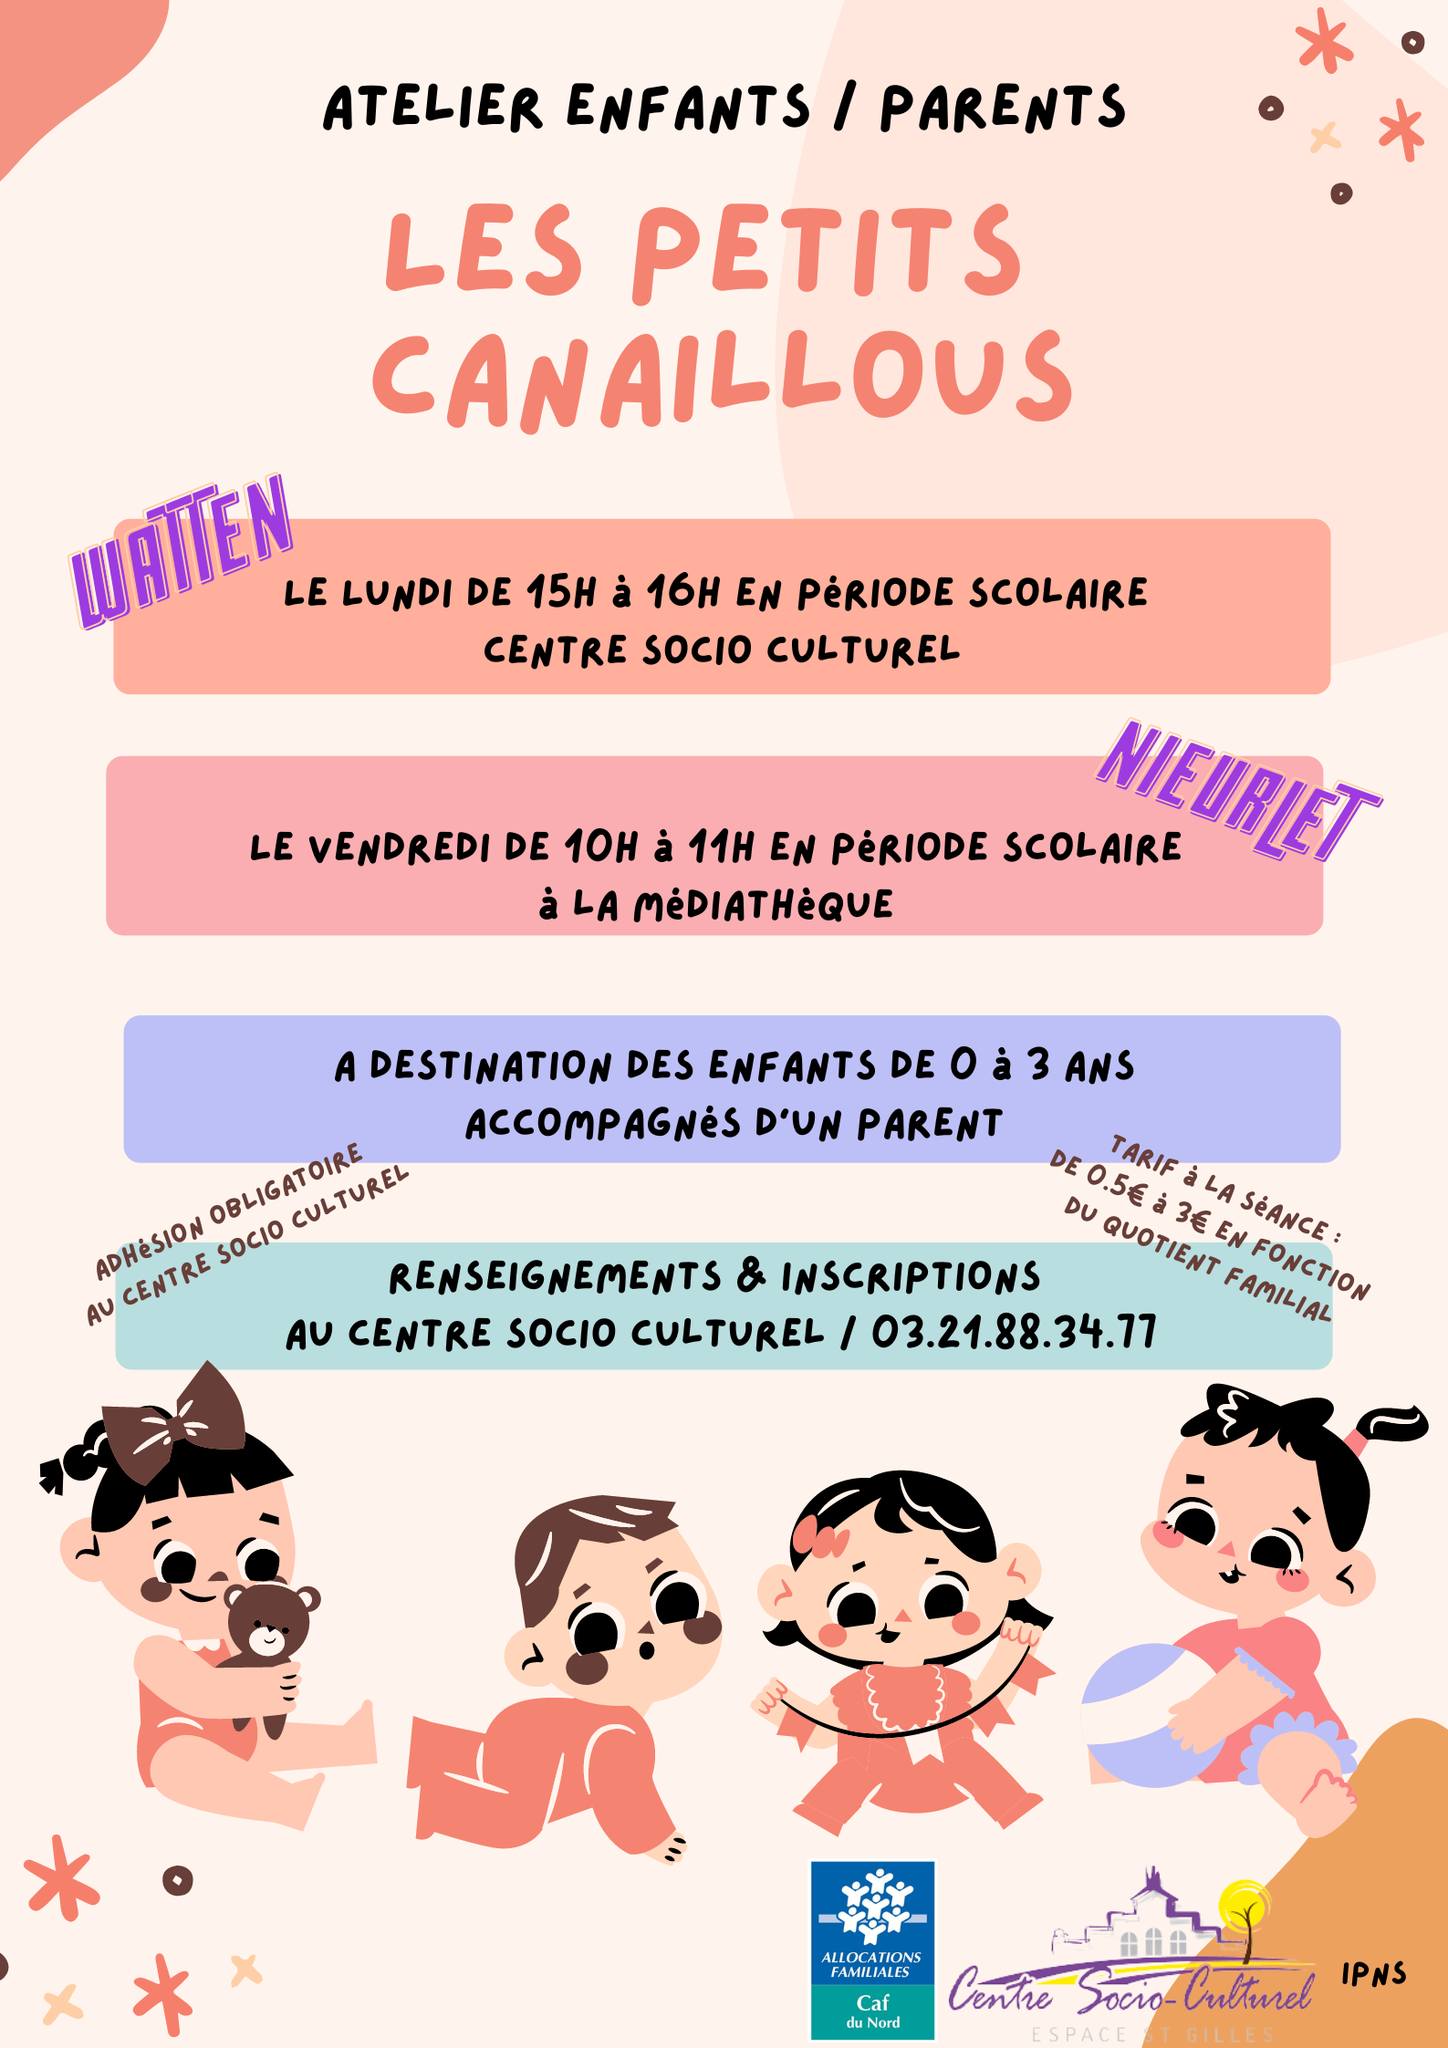 Les Petits Canaillous (ateliers enfants parents)